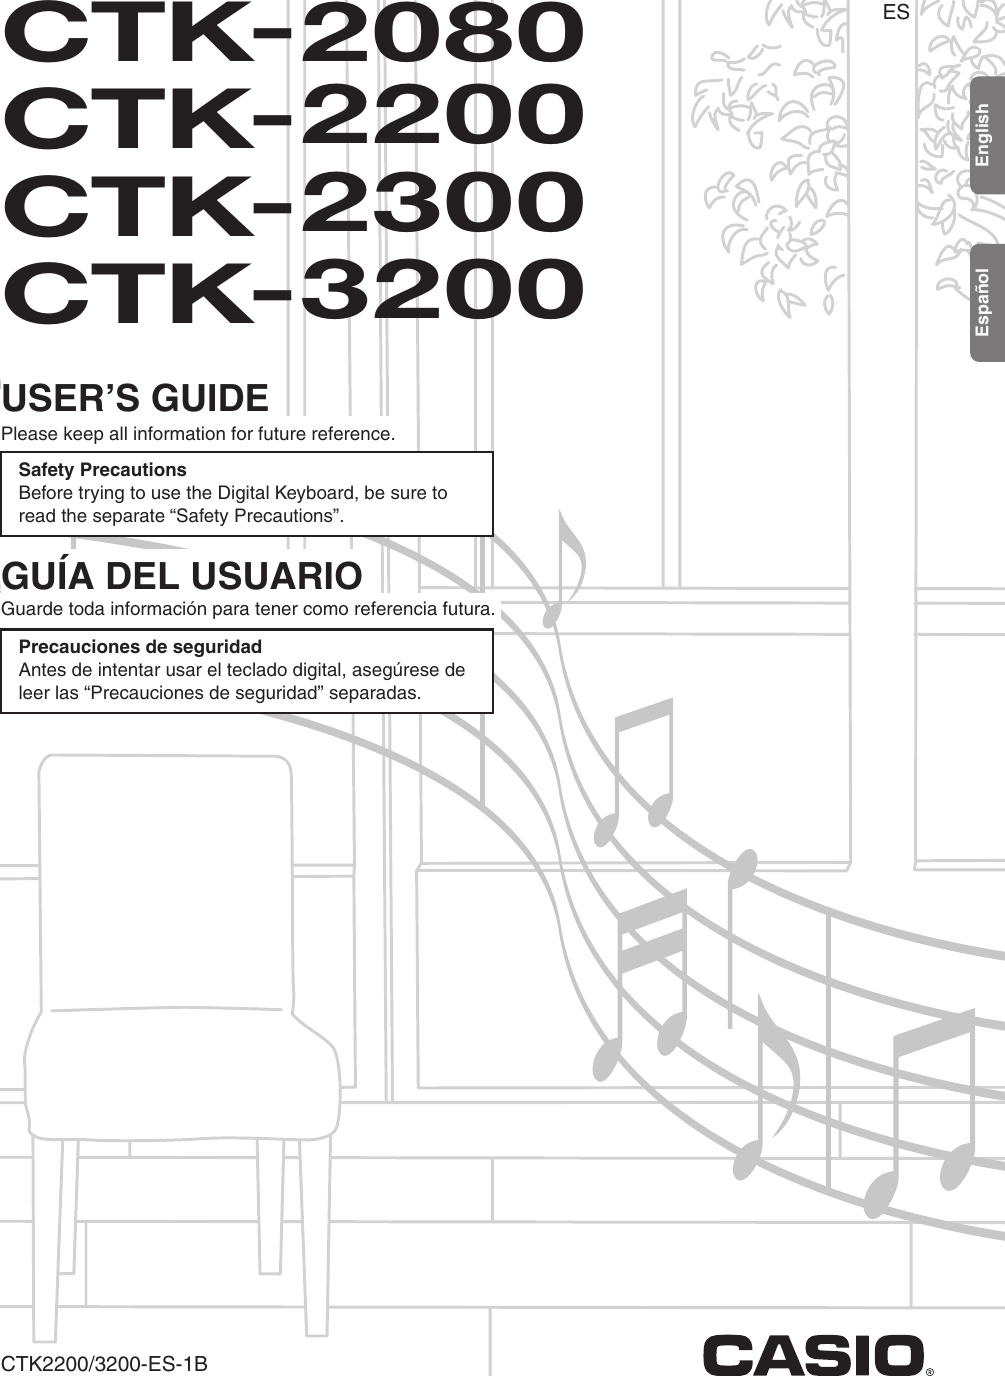 Casio Ctk 2300 Owners Manual CTK2080_CTK2200_CTK2300_CTK3200_e